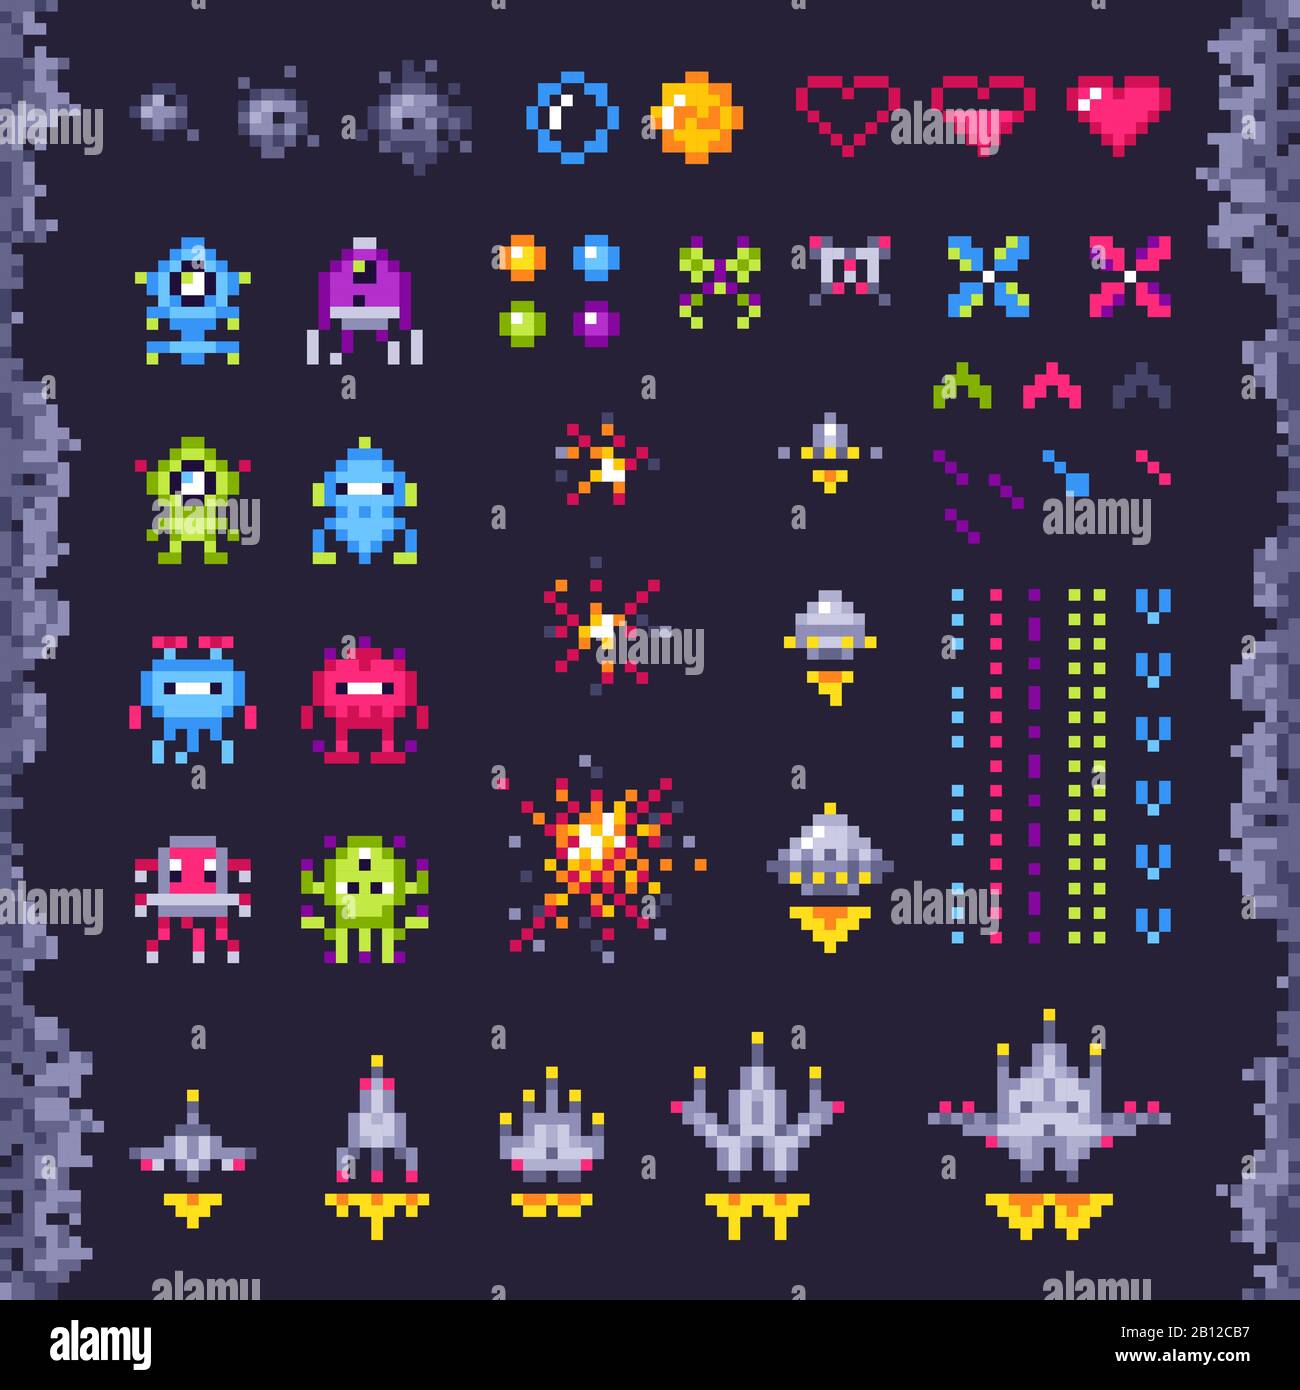 Arcade-Spiel im Retro Space. Invasoren Raumschiff, Pixel Invader Monster und Retro Videospiele Pixel Art isolierte Objekte Illustration Set Stock Vektor